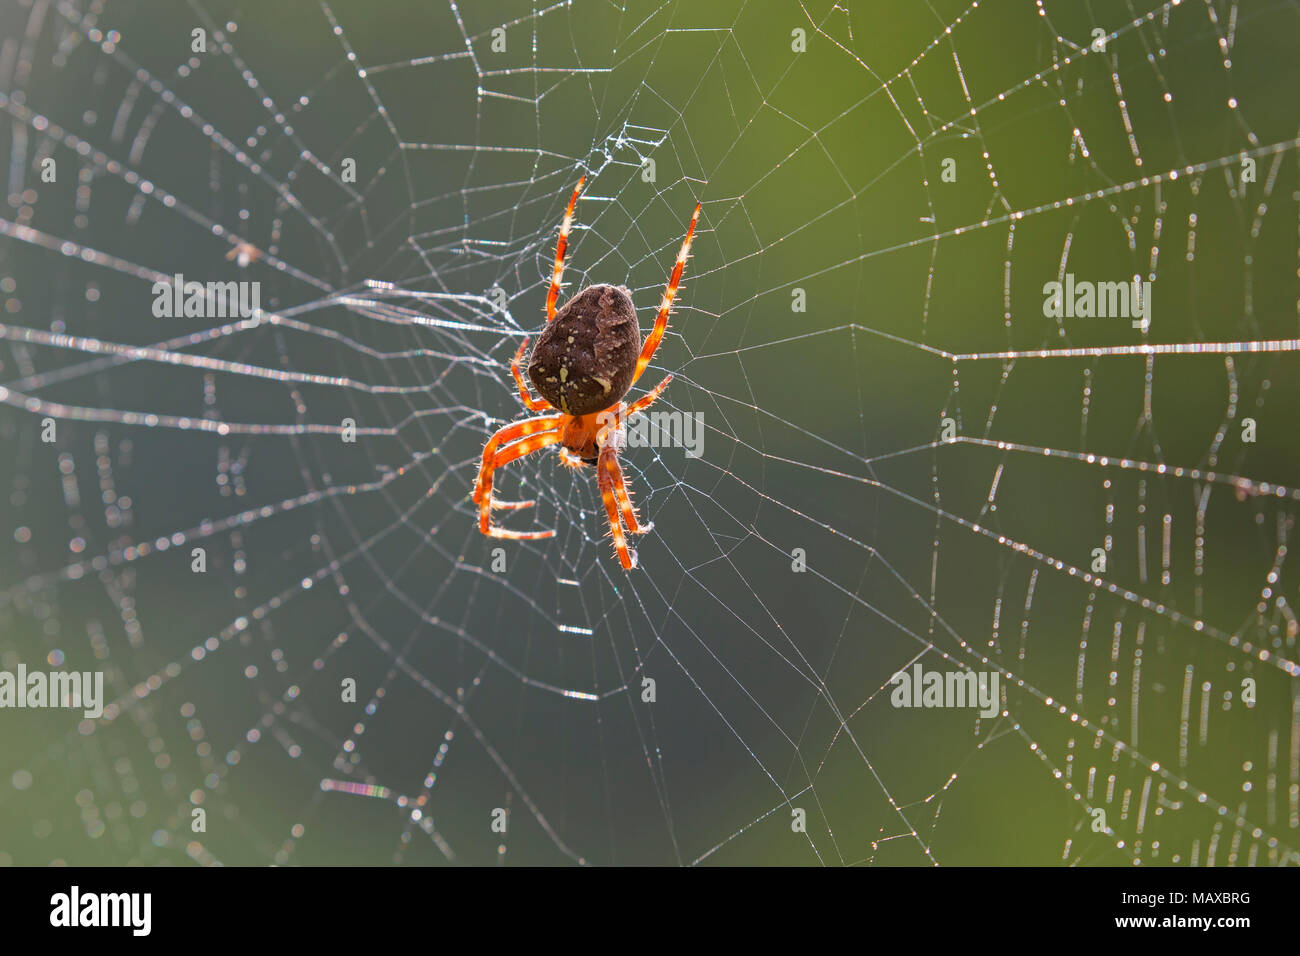 European Garden Spider/Diadem Spinne/Spider/gekrönt orb Weaver (Araneus diadematus) im Spinnennetz Stockfoto